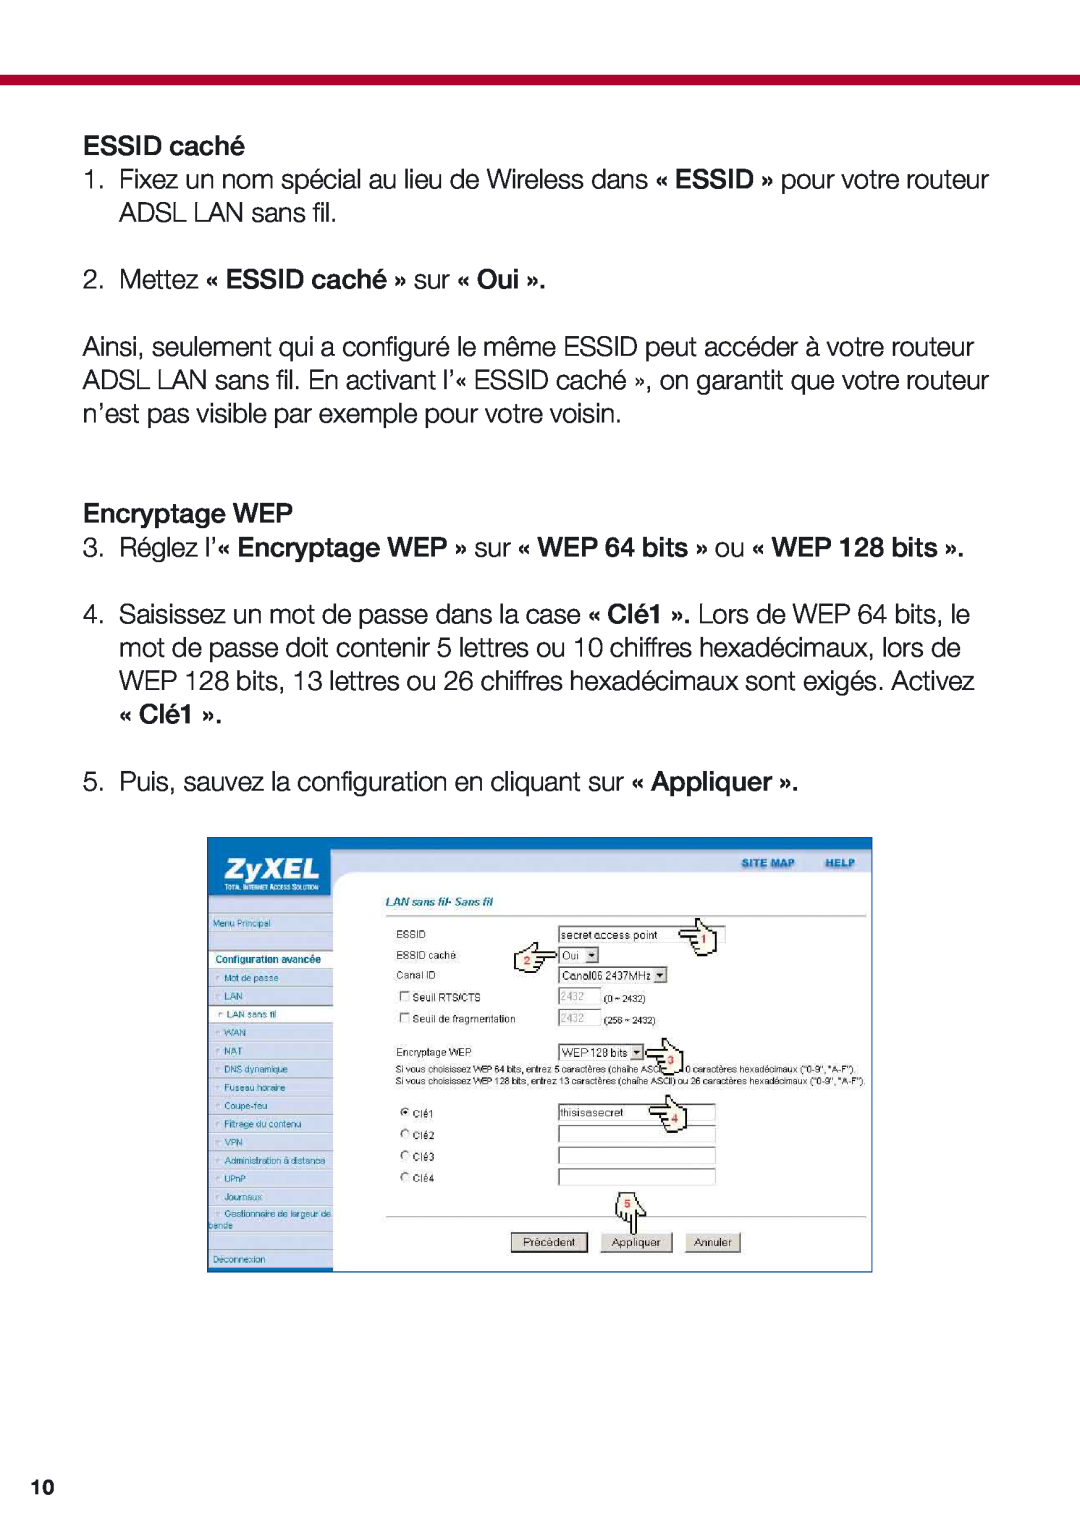 ZyXEL Communications 653HWI manual Mettez « ESSID caché » sur « Oui », Encryptage WEP 